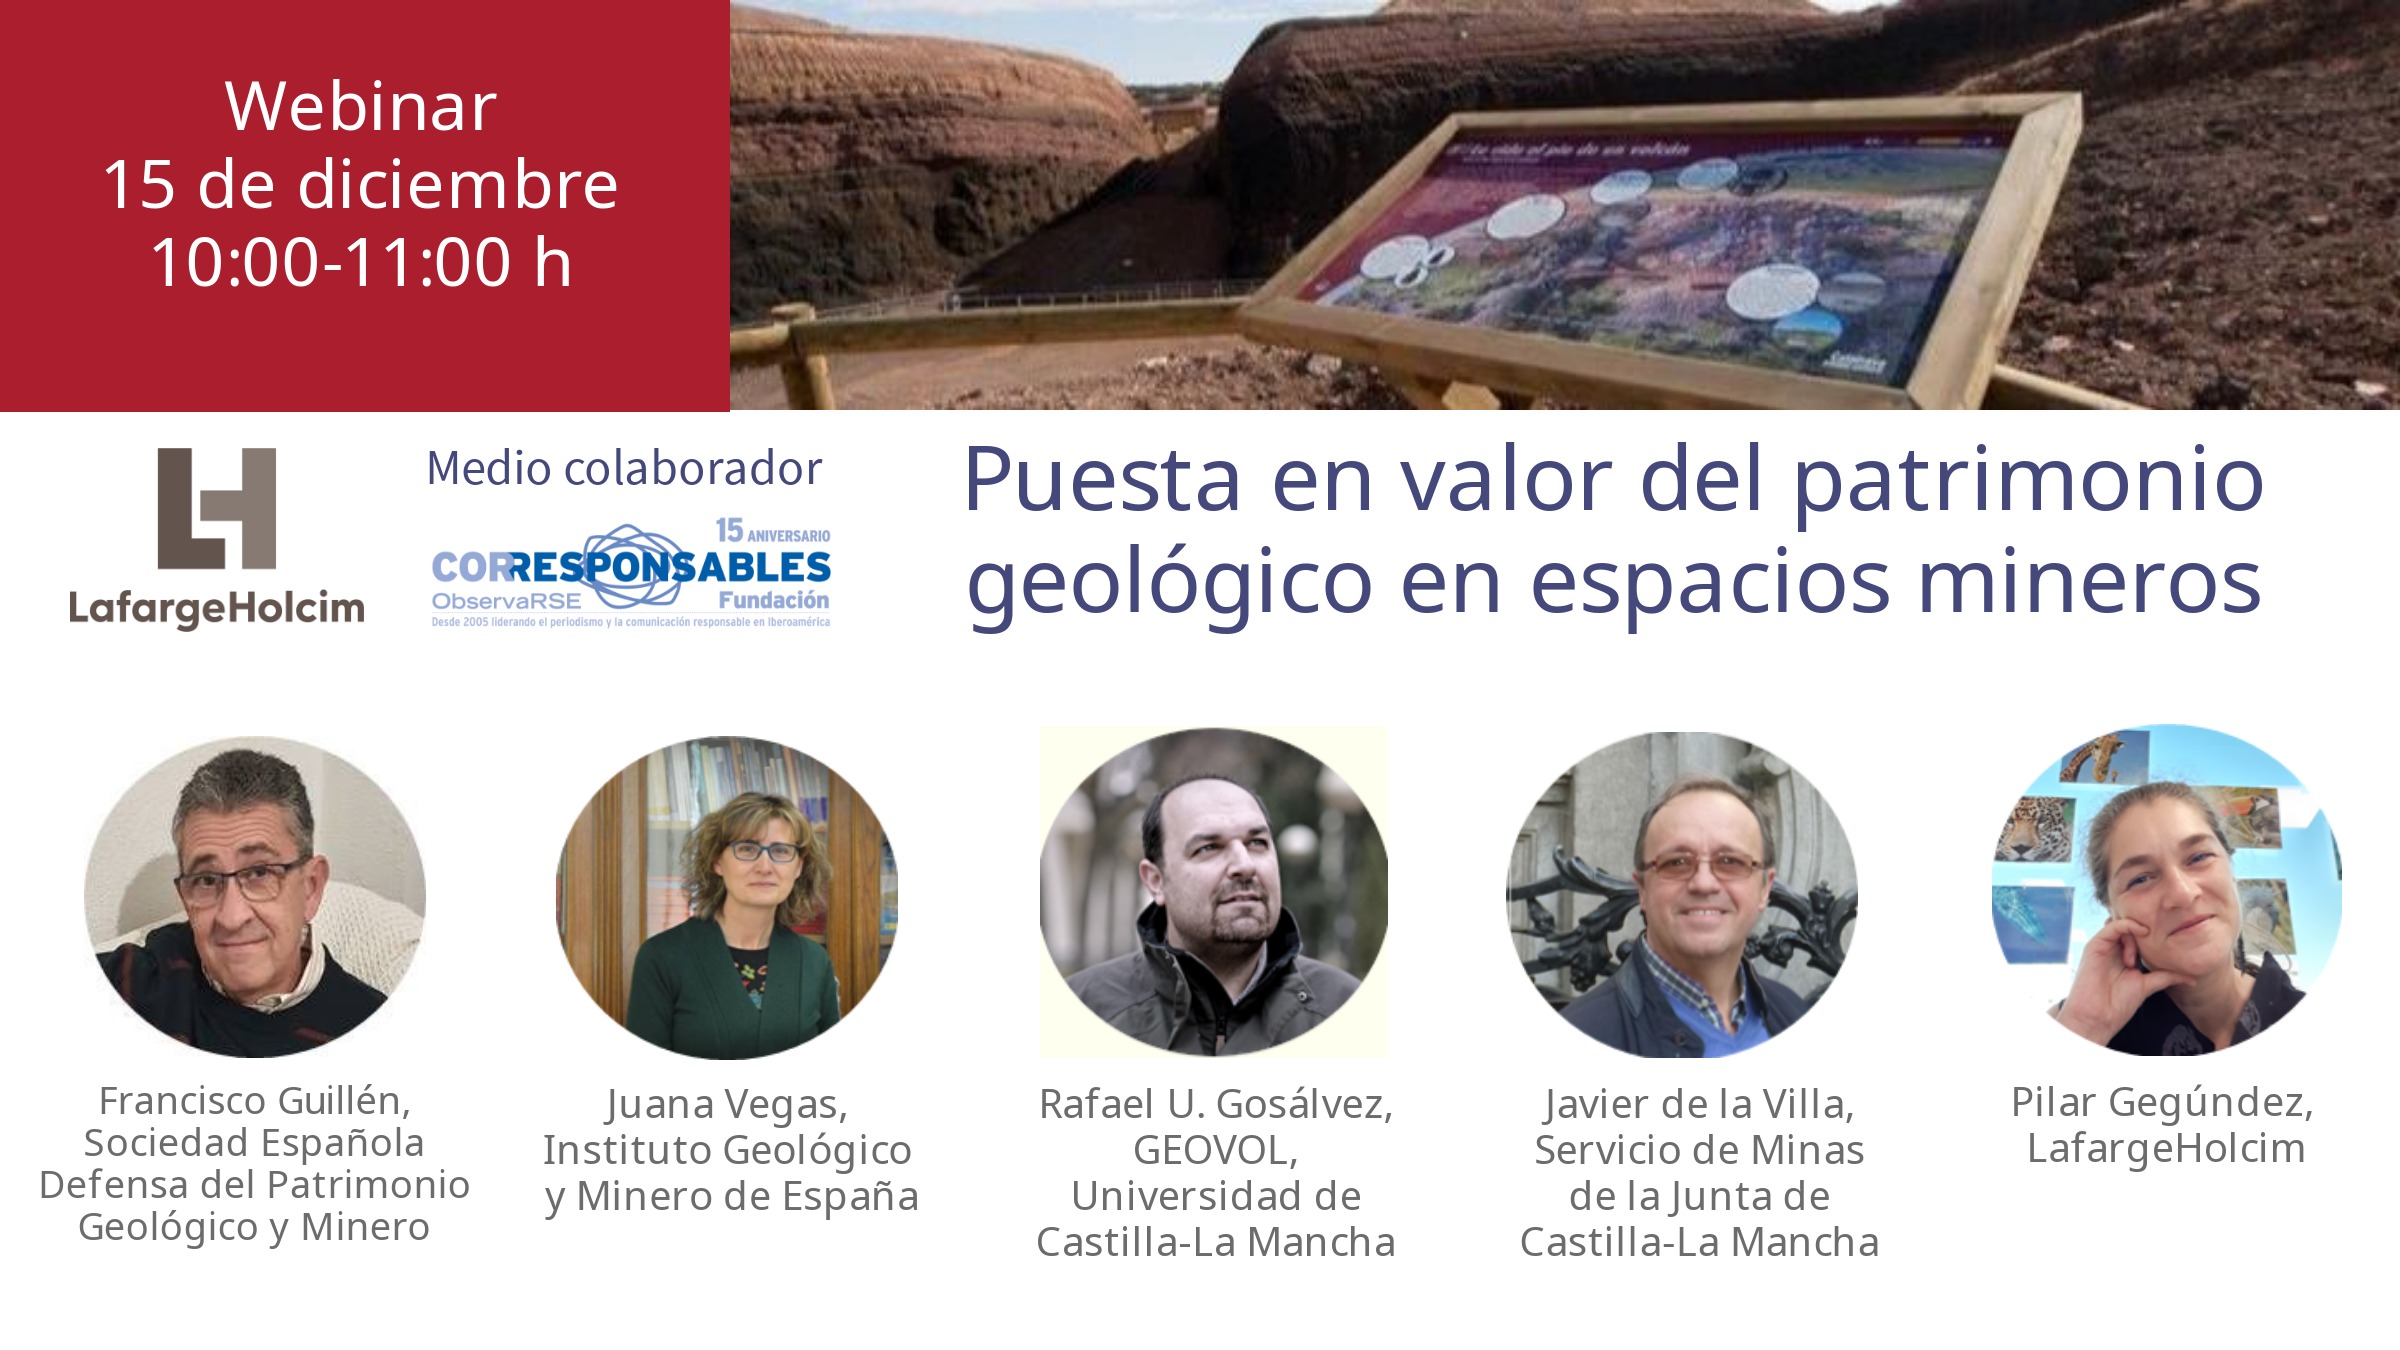 Invitacion webinar puesta en valor del patrimonio geologico en espacios mineros